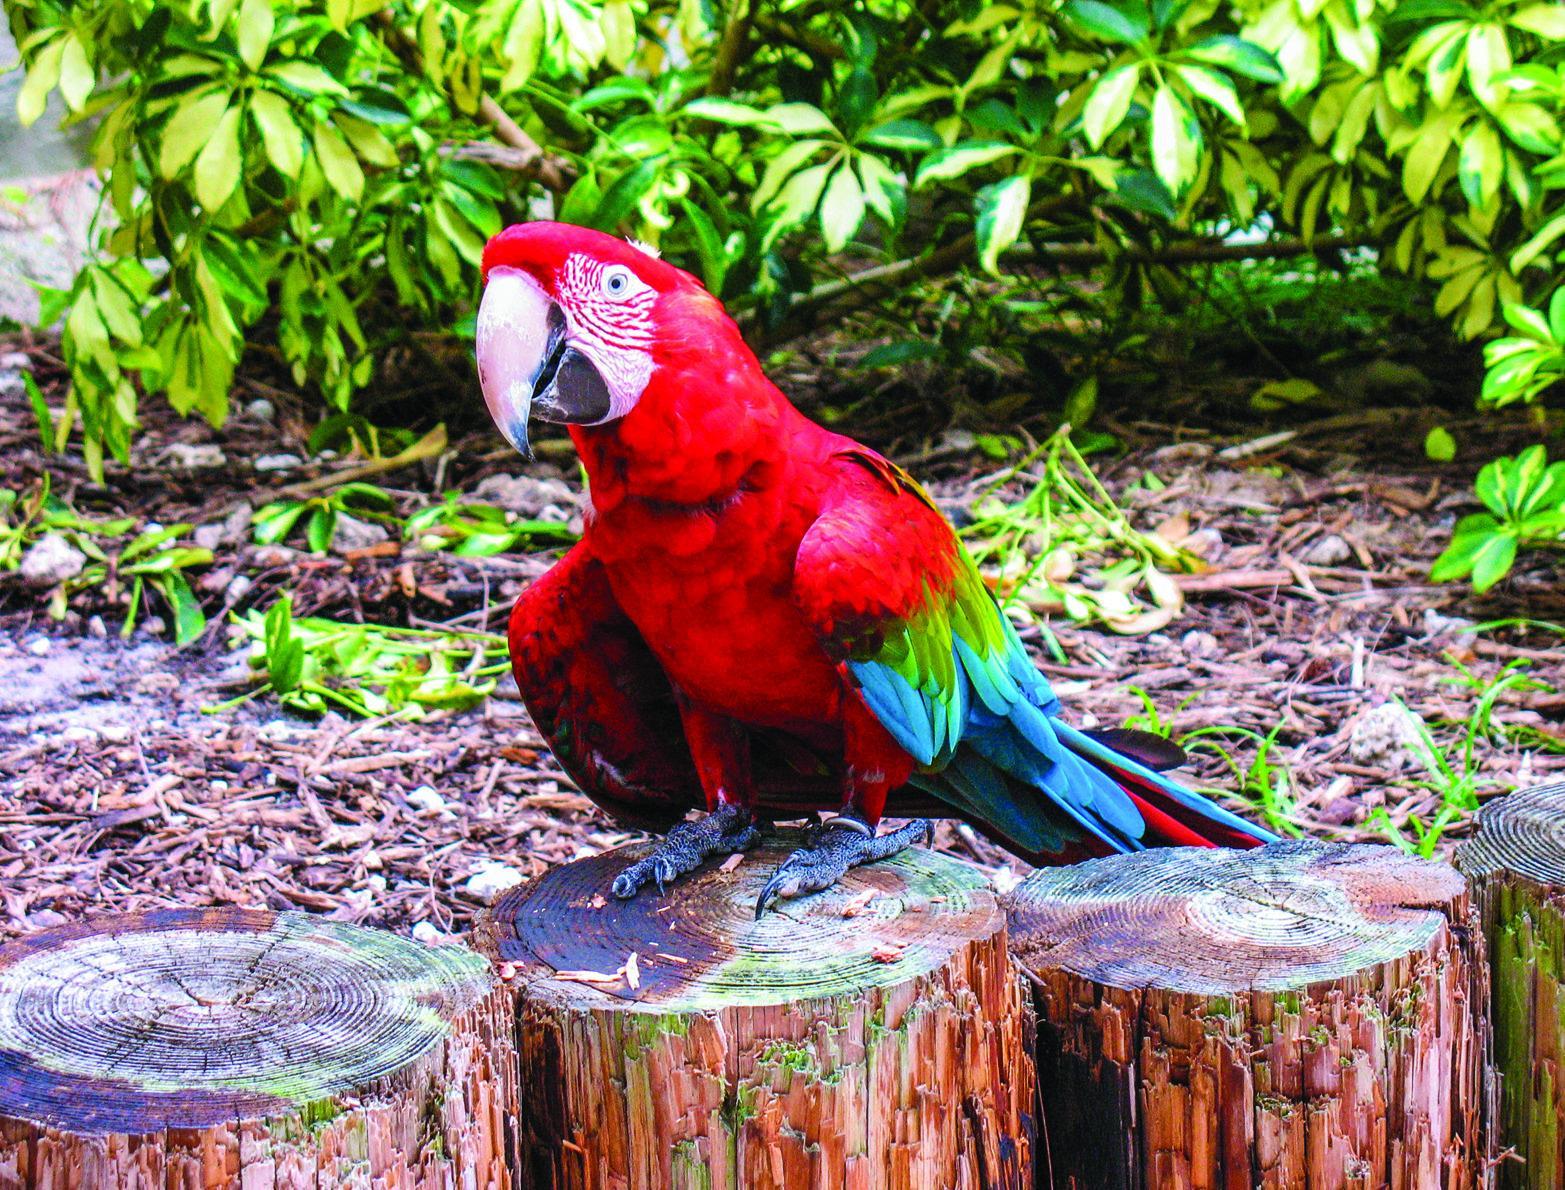 Exploring Nature: Costa Rica